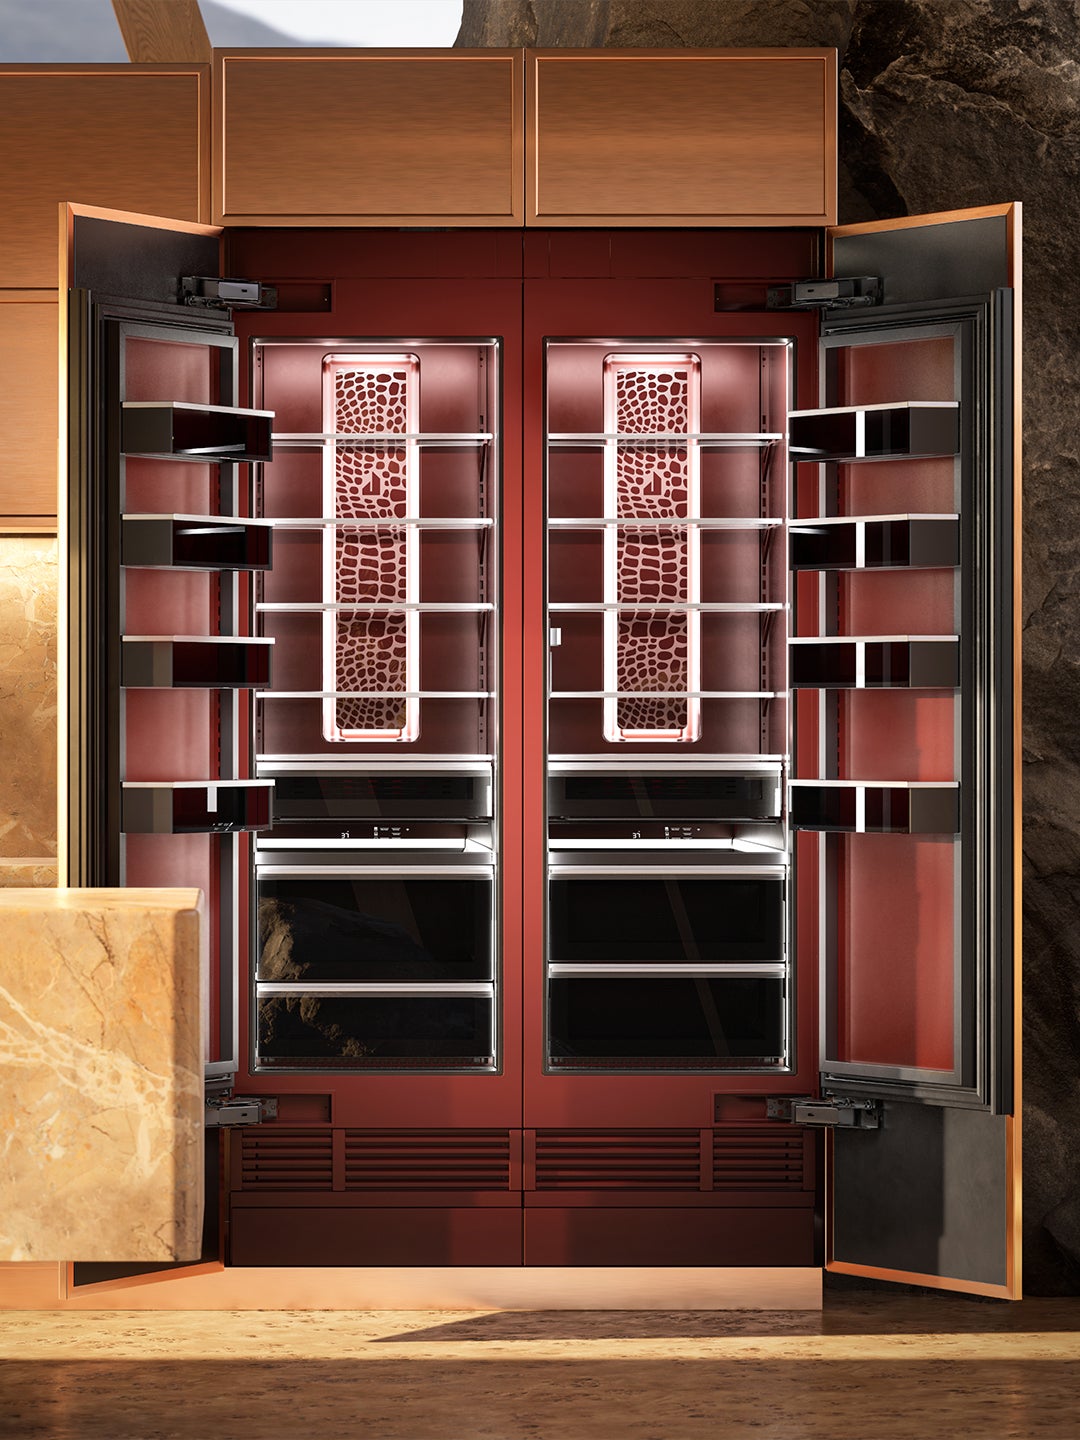 interior of red fridge